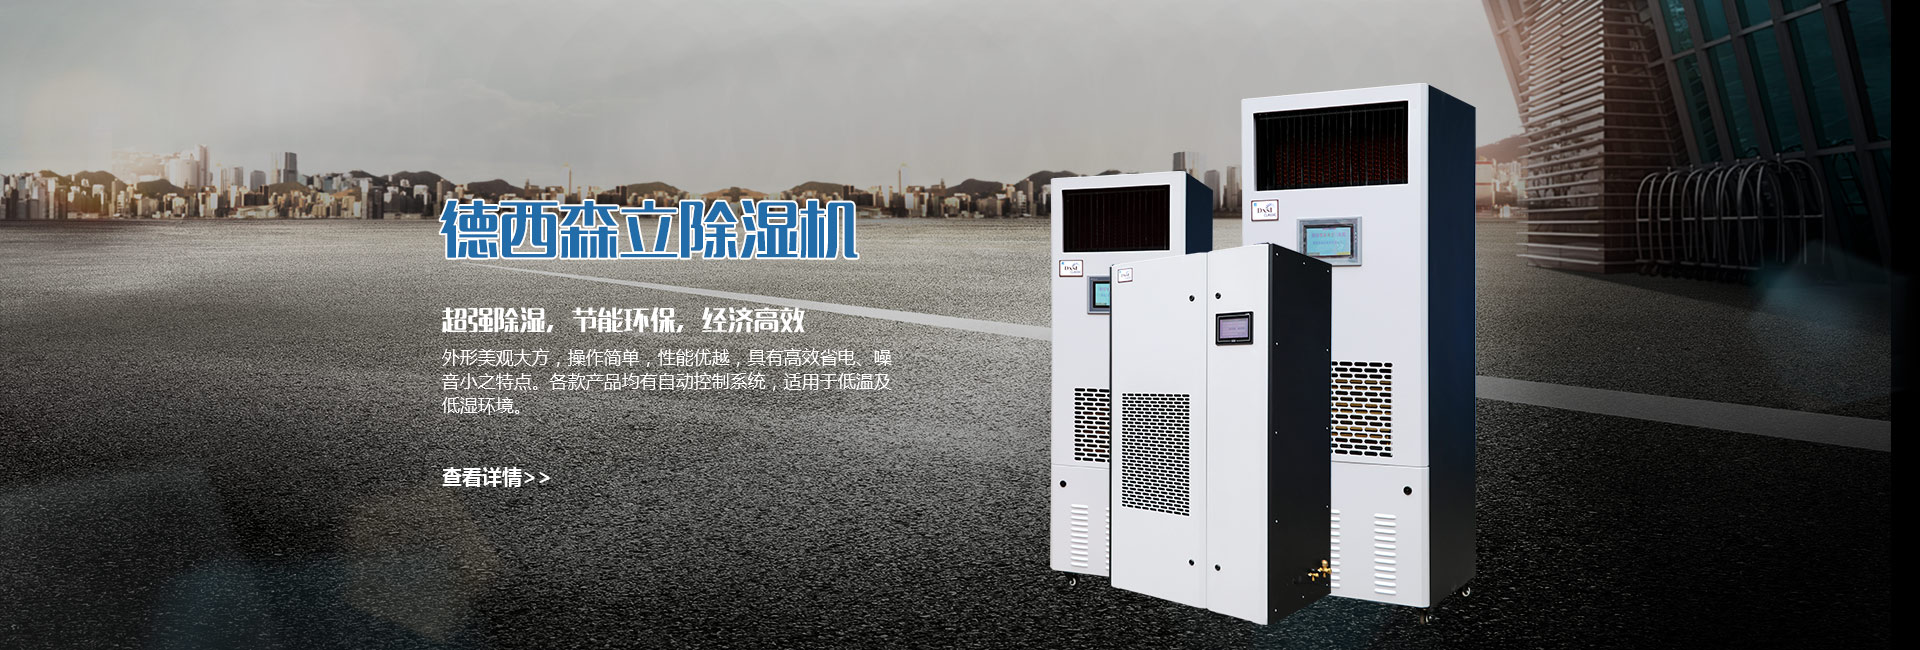 Hangzhou Qianjing Electric Manufacturing Co., Ltd.